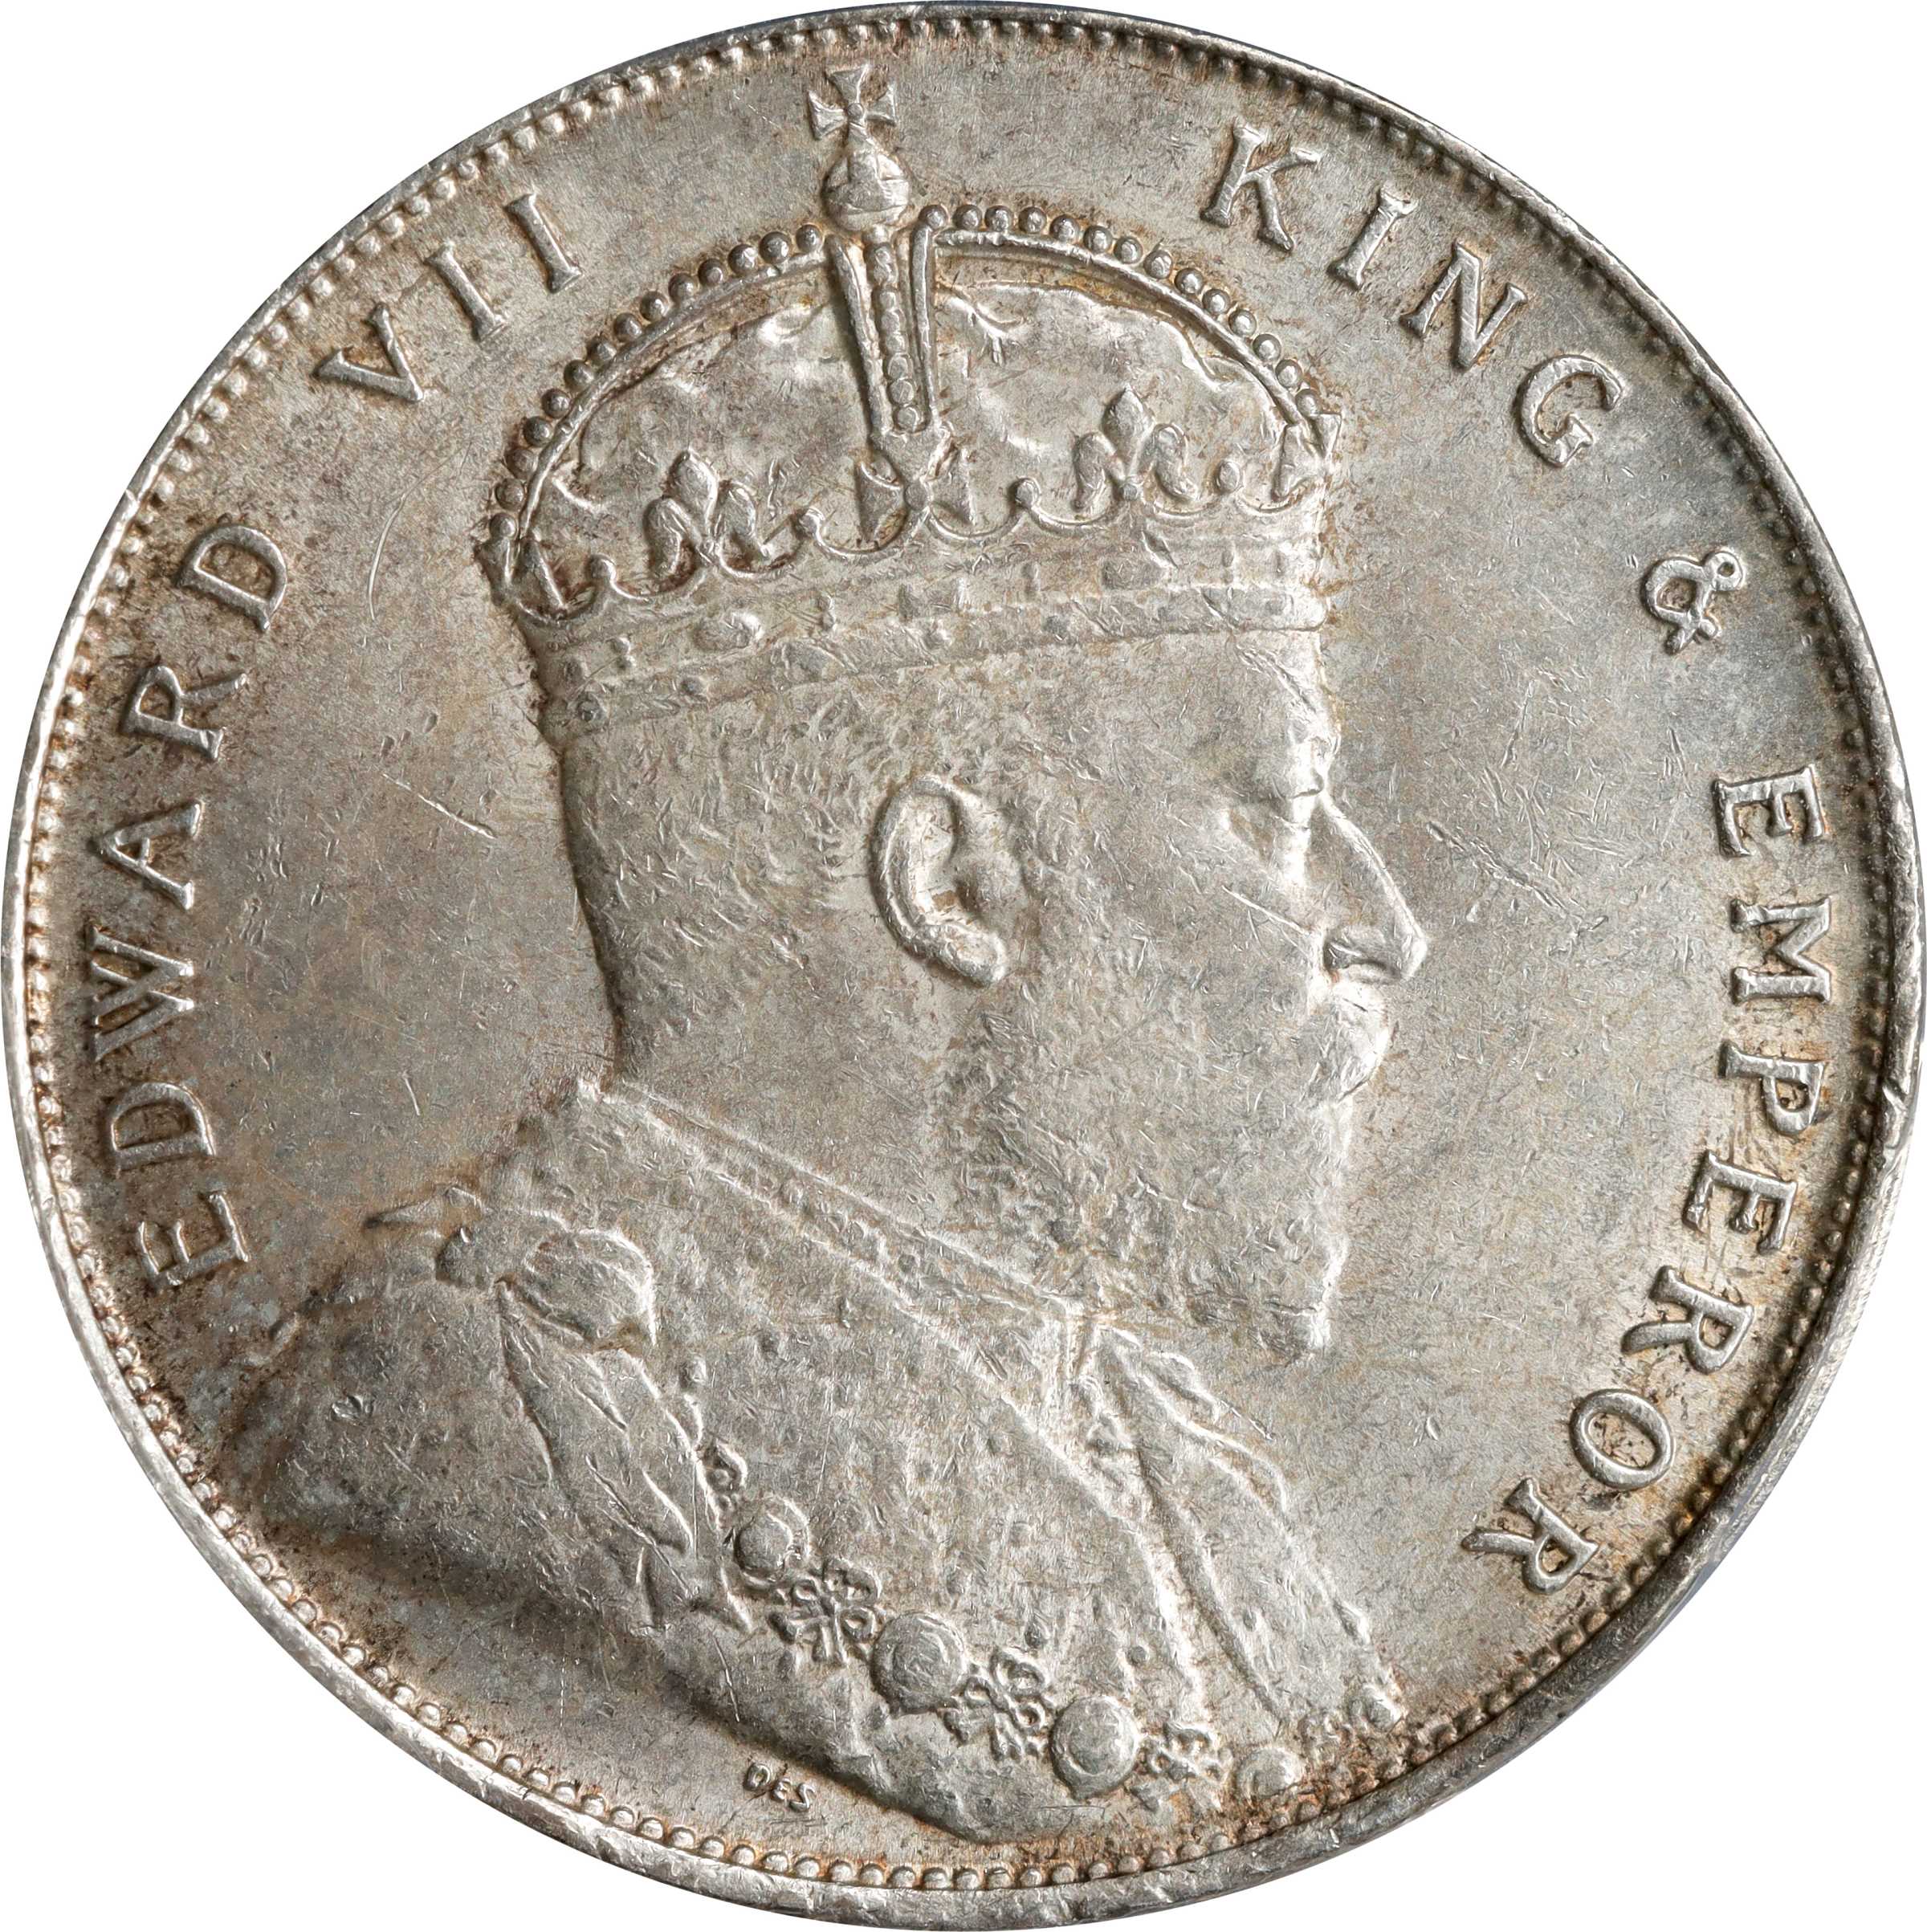 STRAITS SETTLEMENTS. Dollar, 1909. London Mint. Edward VII. PCGS